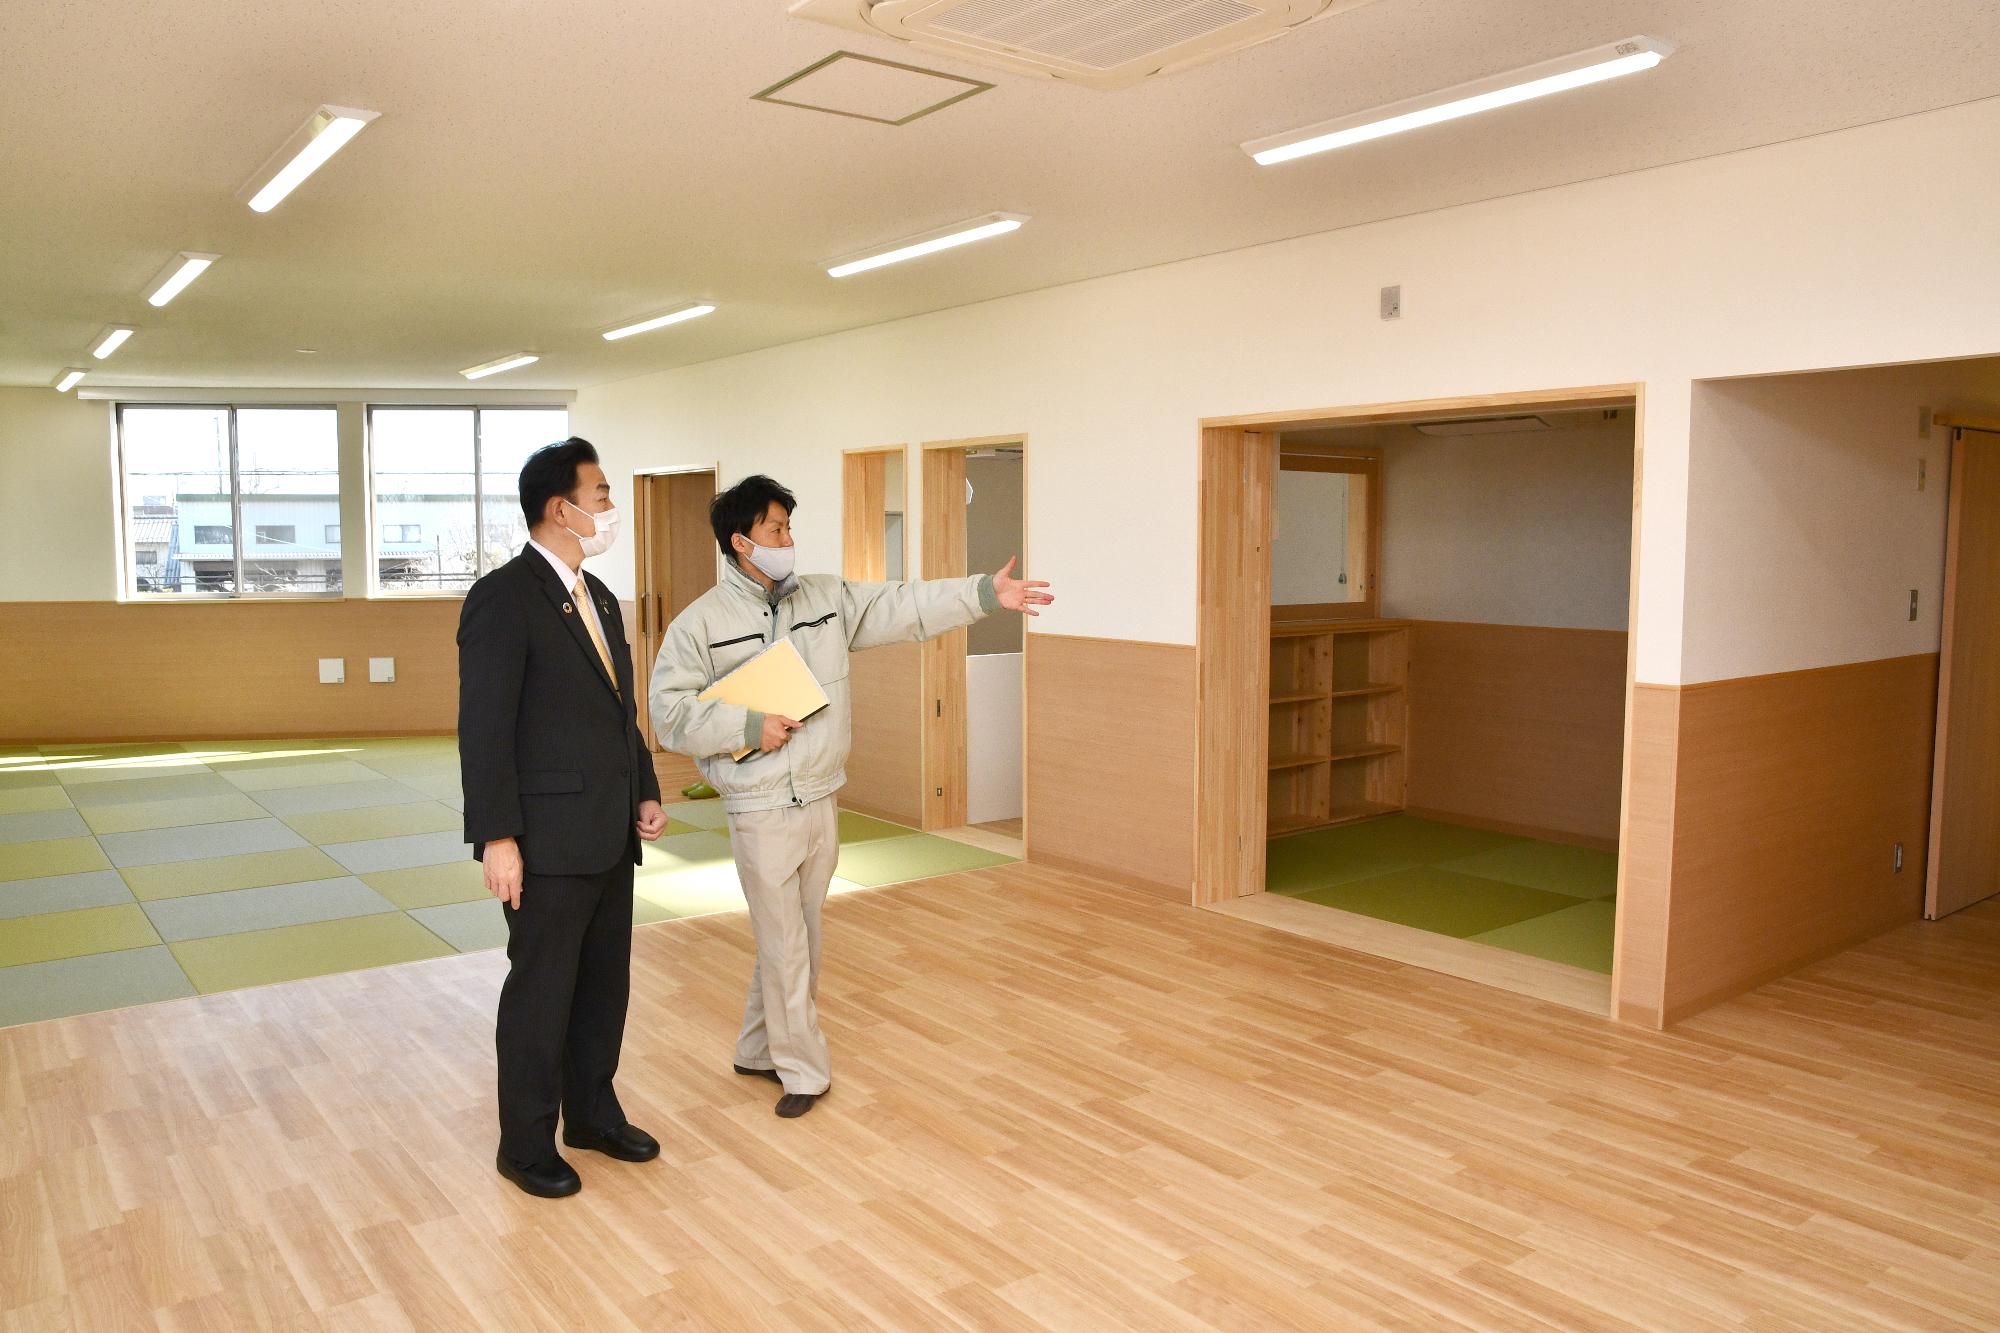 桶川東放課後児童クラブの室内を職員の説明を聞きながら内覧している小野市長の様子